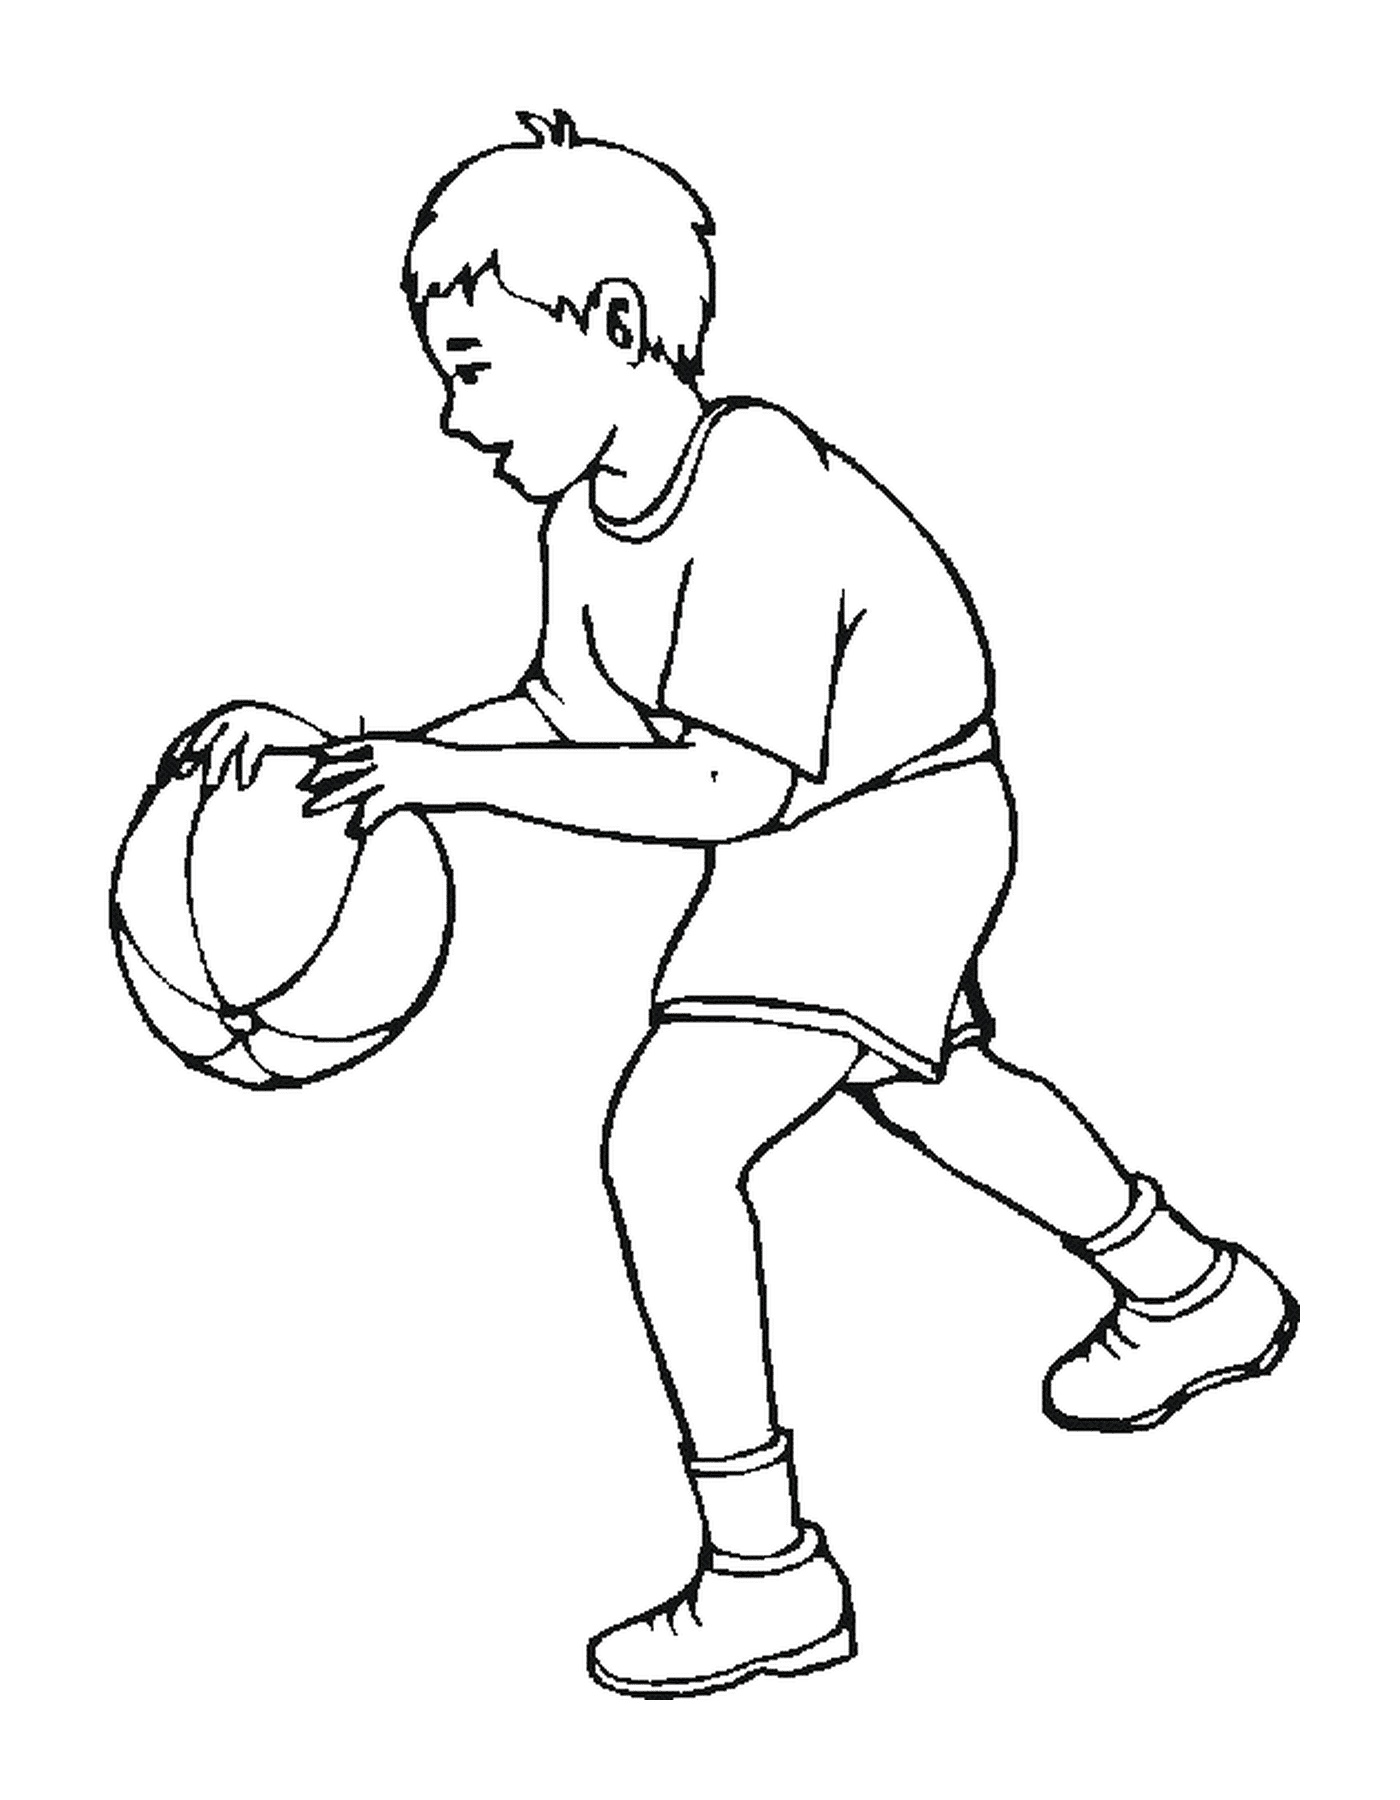  एक बच्चा बास्केट खेलता है 